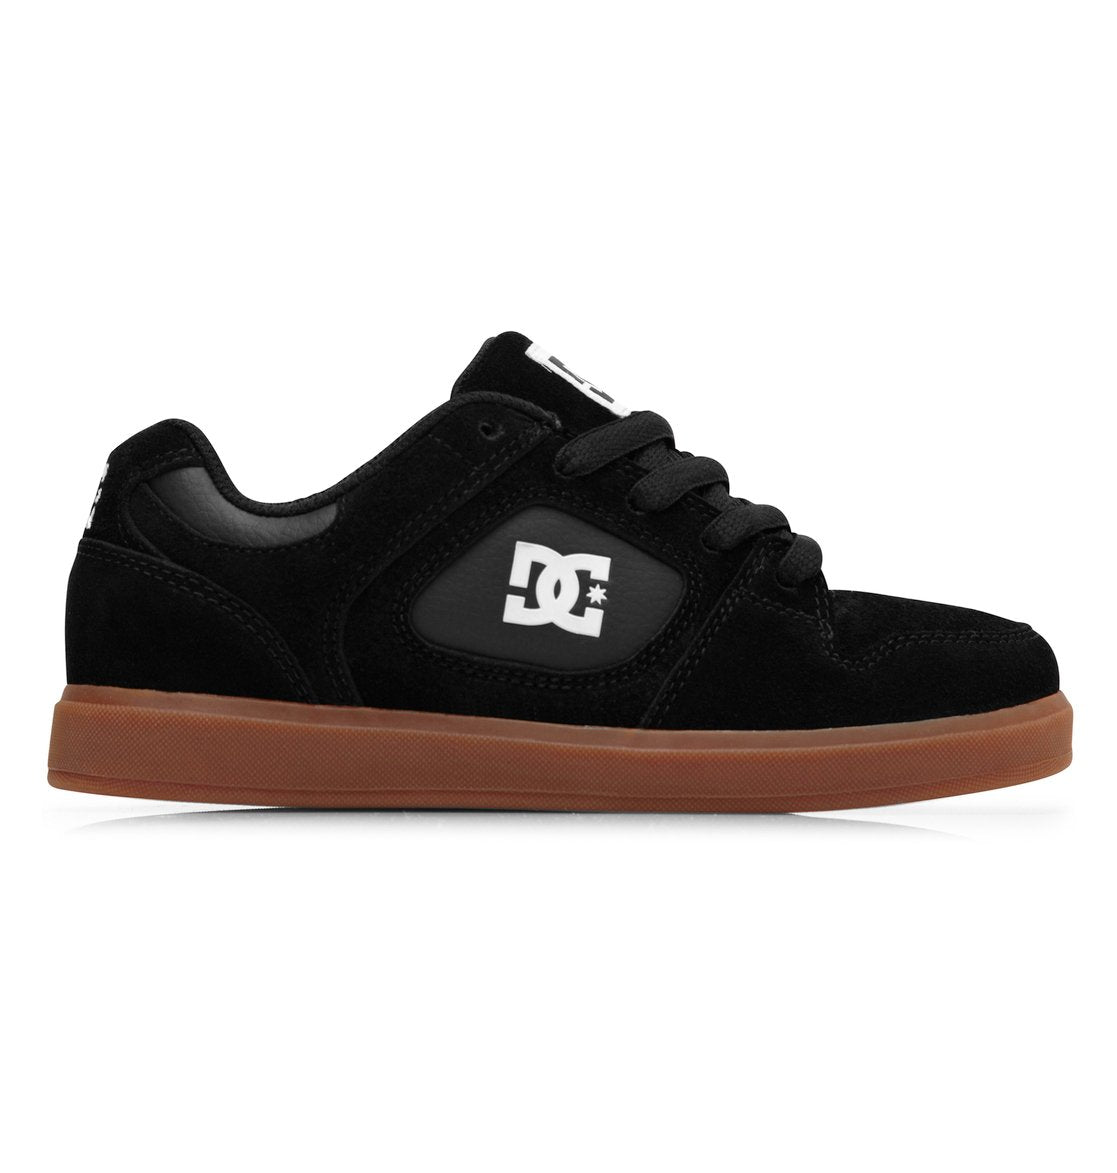 DC Shoes Union GS Black Gum Sole